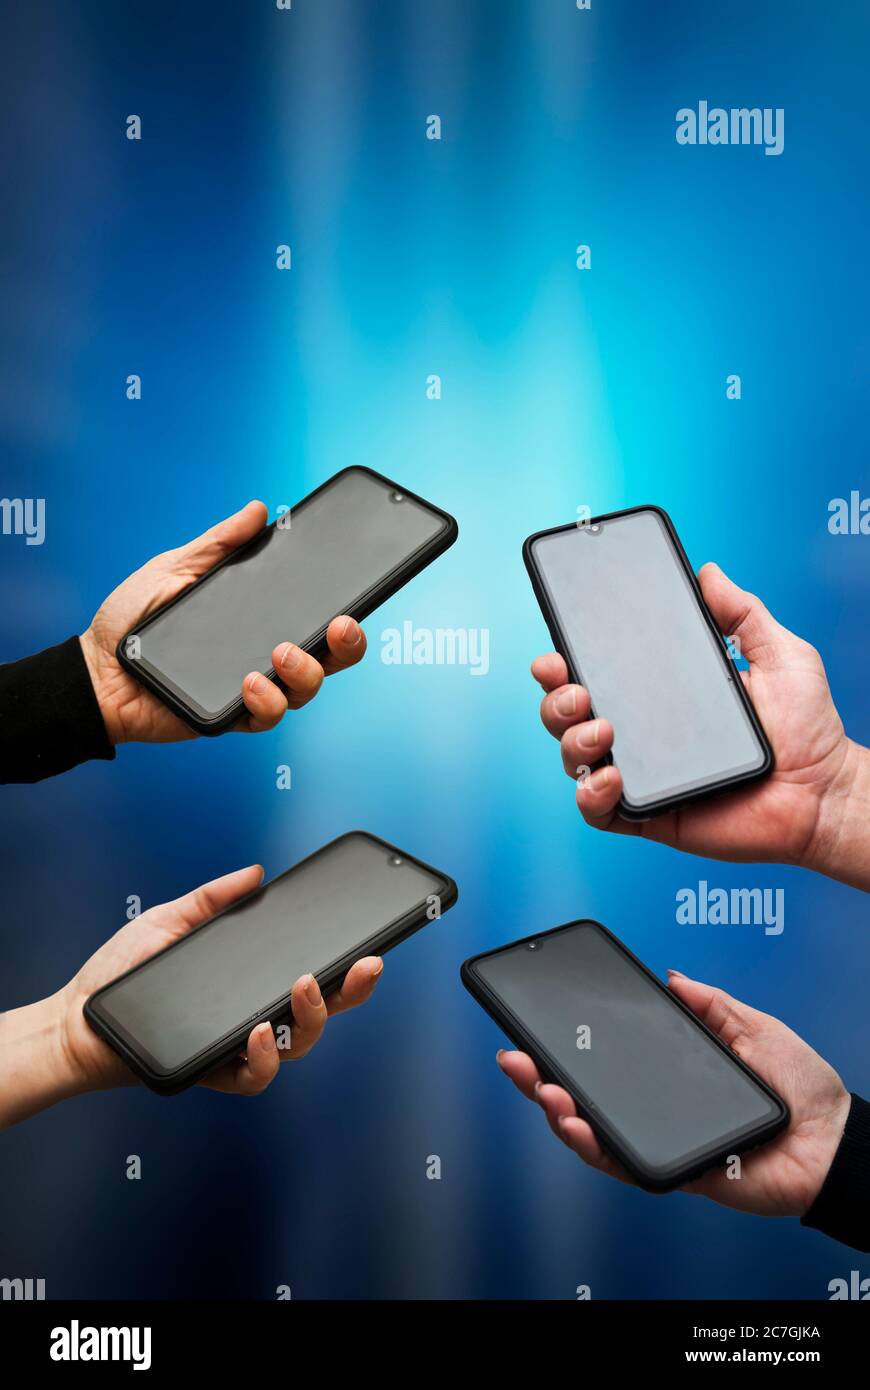 mains de personnes qui tiennent un smartphone Banque D'Images